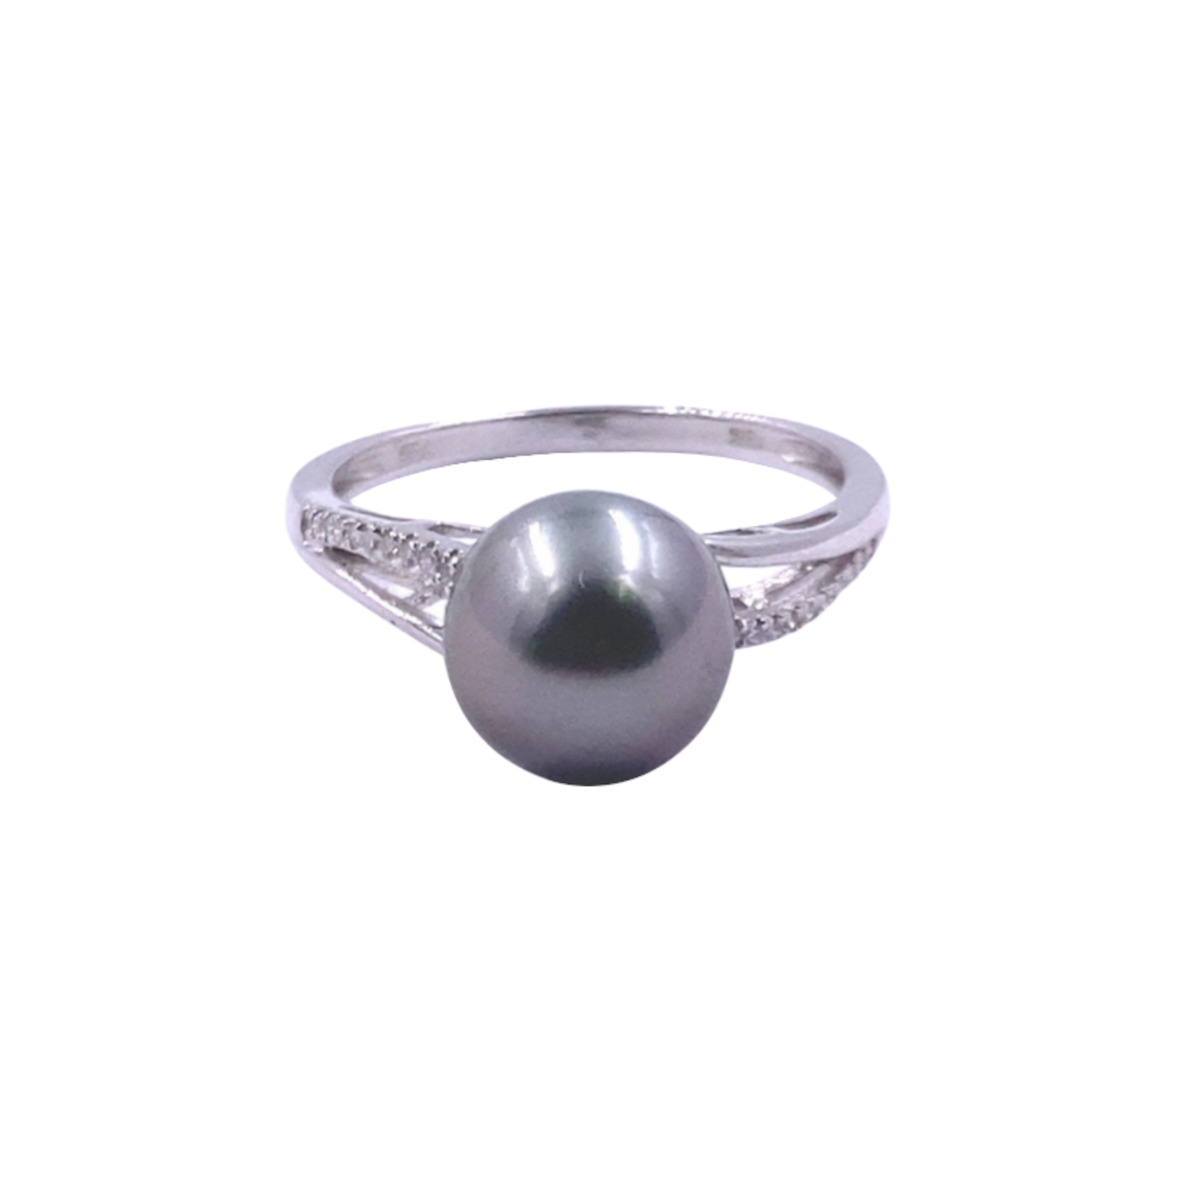 anello da donna con perla centrale grigia tahiti 9 mm diametro e diamanti bianchi pavé a lato. anello in fantasia con intereccio con perla al centro. montatura in oro bianco 18 carati.